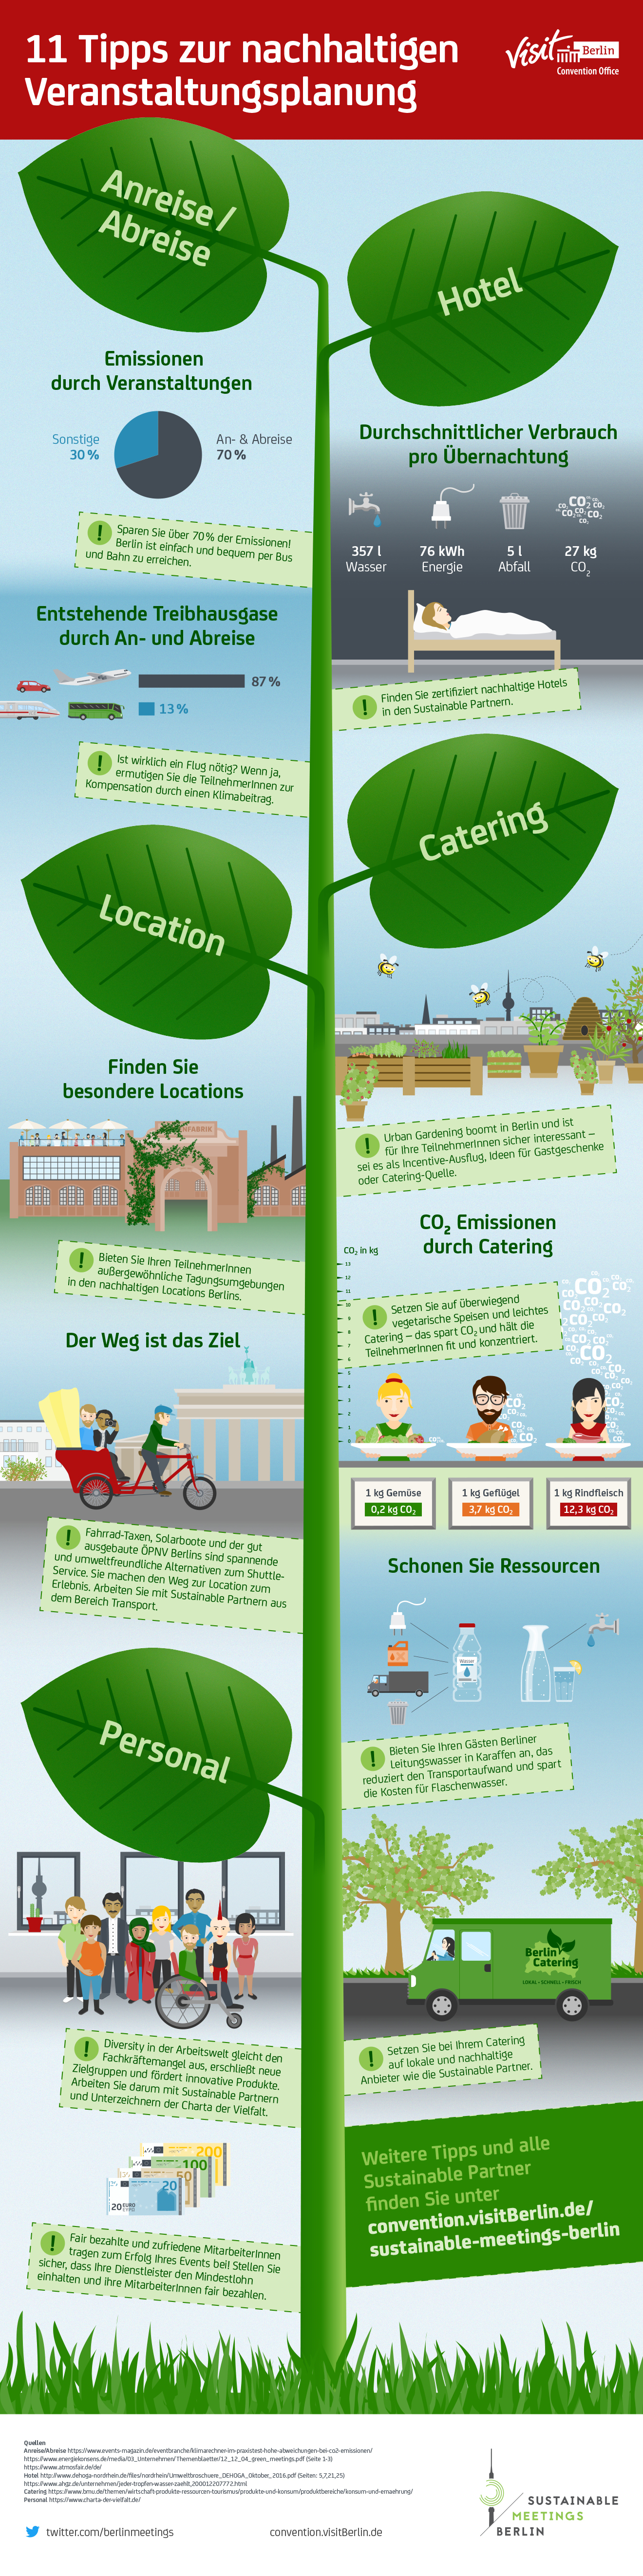 Sustainable Meetings Berlin, Infografik zur nachhaltigen Veranstaltungsplanung